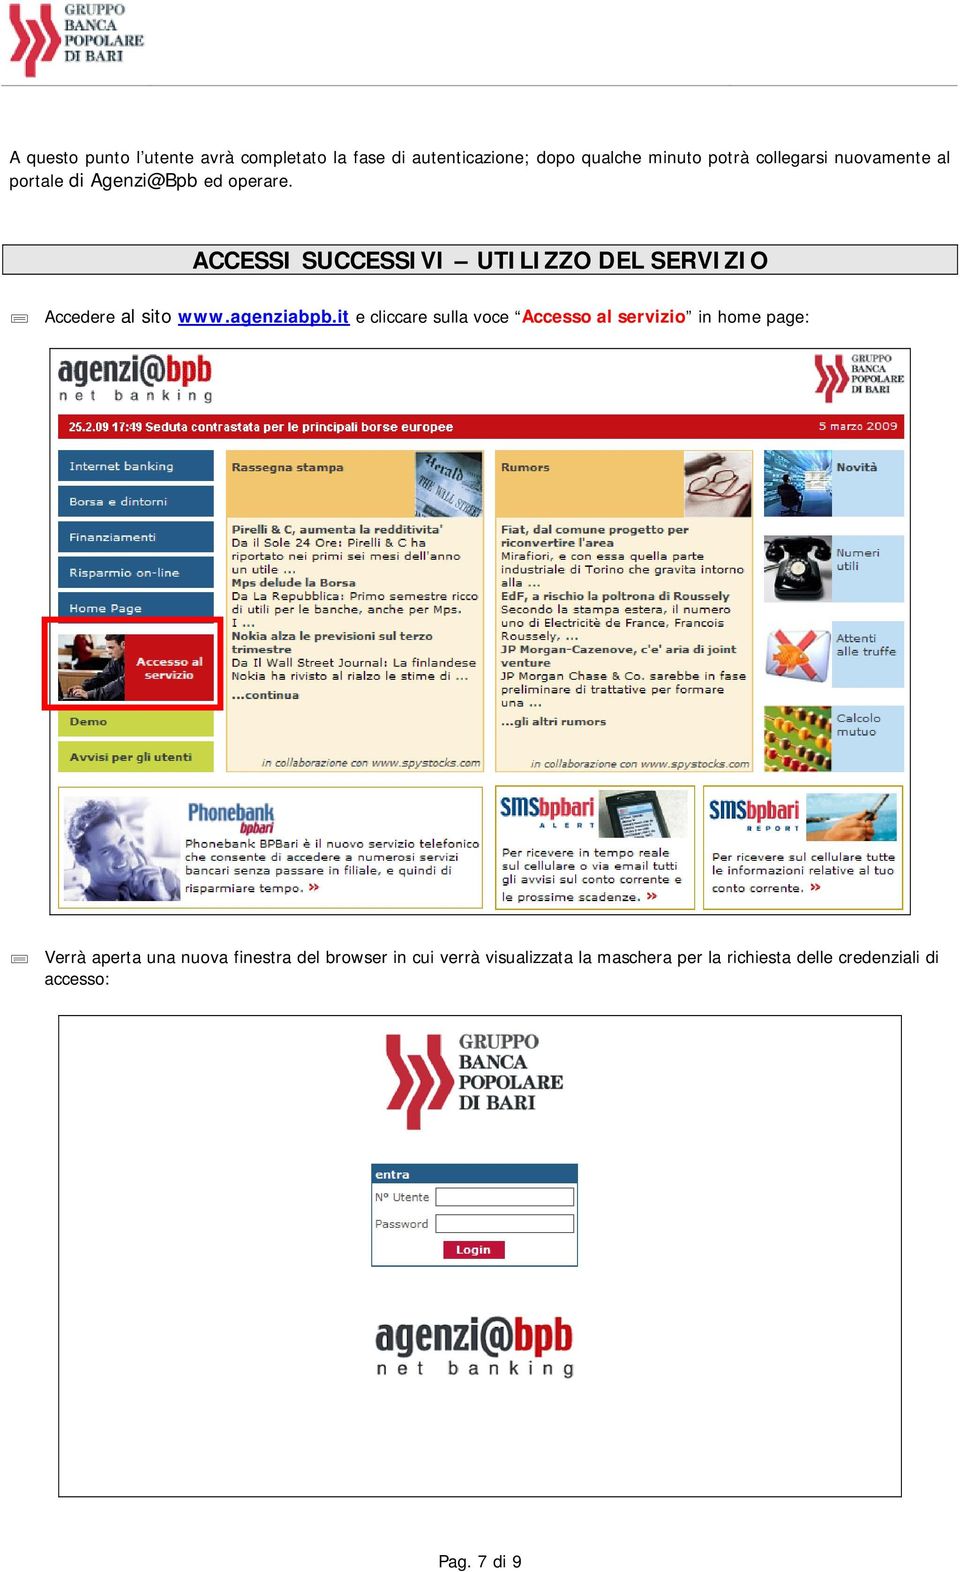 ACCESSI SUCCESSIVI UTILIZZO DEL SERVIZIO Accedere al sito www.agenziabpb.